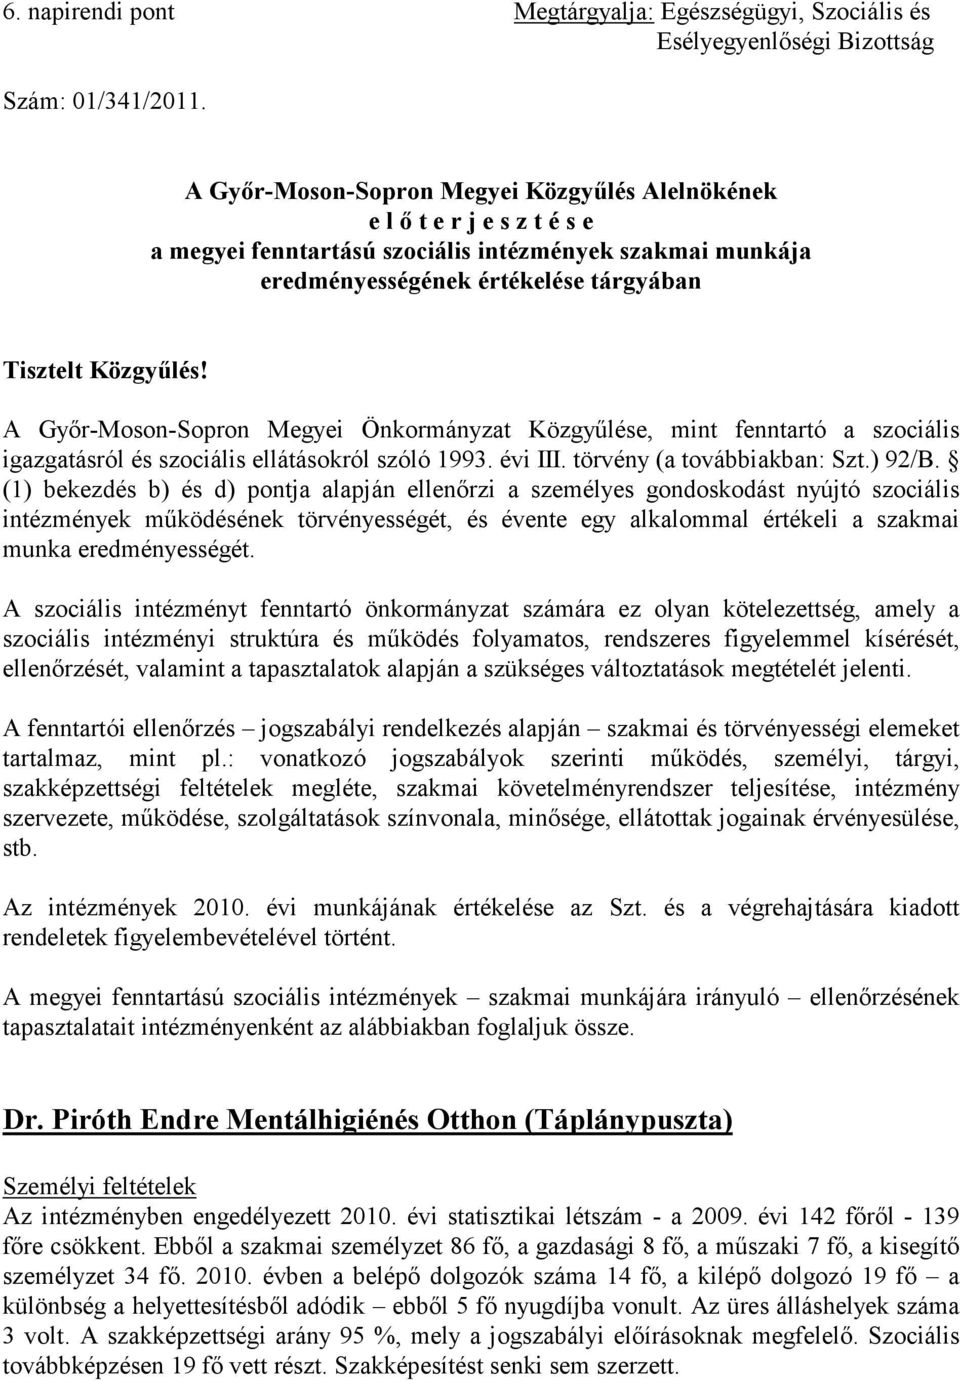 A Győr-Moson-Sopron Megyei Önkormányzat Közgyűlése, mint fenntartó a szociális igazgatásról és szociális ellátásokról szóló 1993. évi III. törvény (a továbbiakban: Szt.) 92/B.